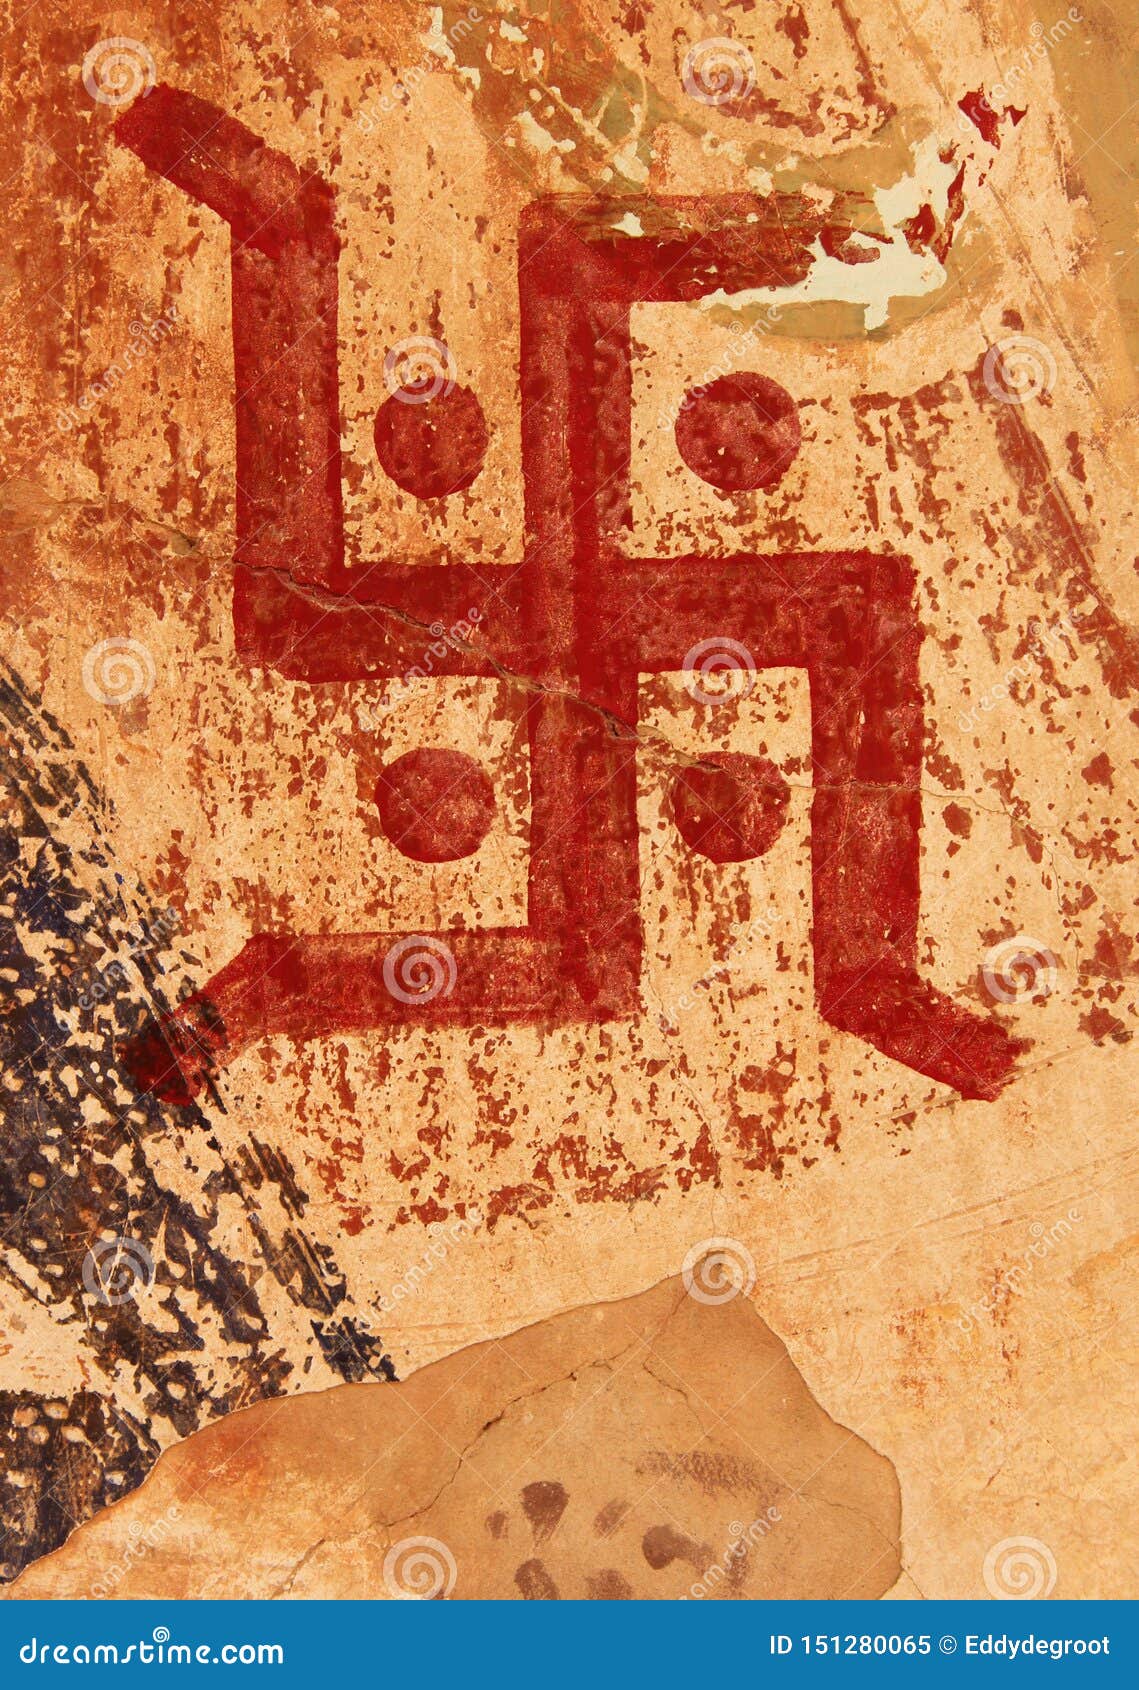 Символ похожий на свастику. Символы похожие на свастику. Индийский символ похожий на свастику.